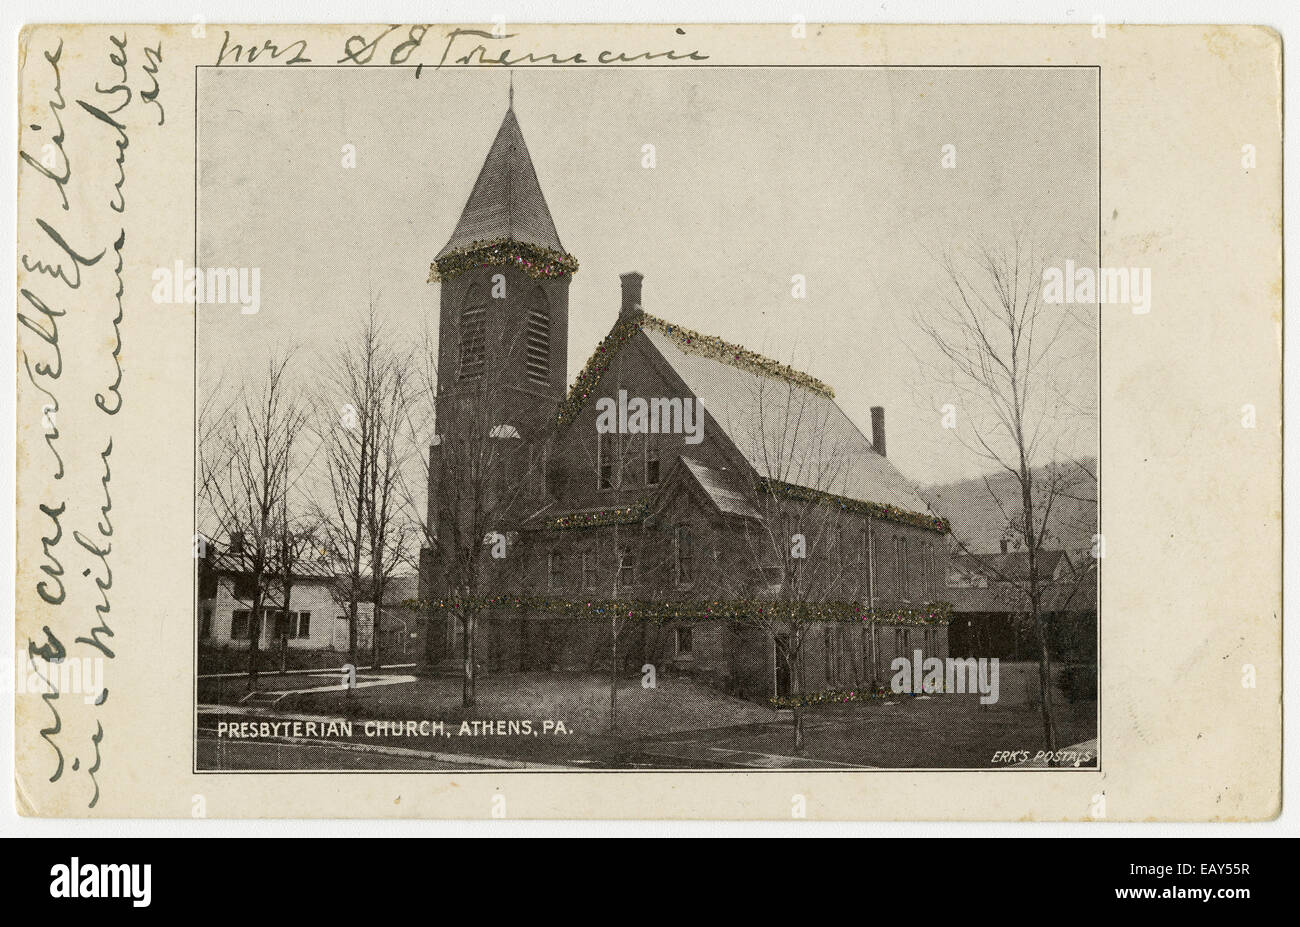 Presbyterianische Kirche in Athen, Pennsylvania nach einer Pre-1923 Postkarte von RG-428 Postkartensammlung, Stockfoto